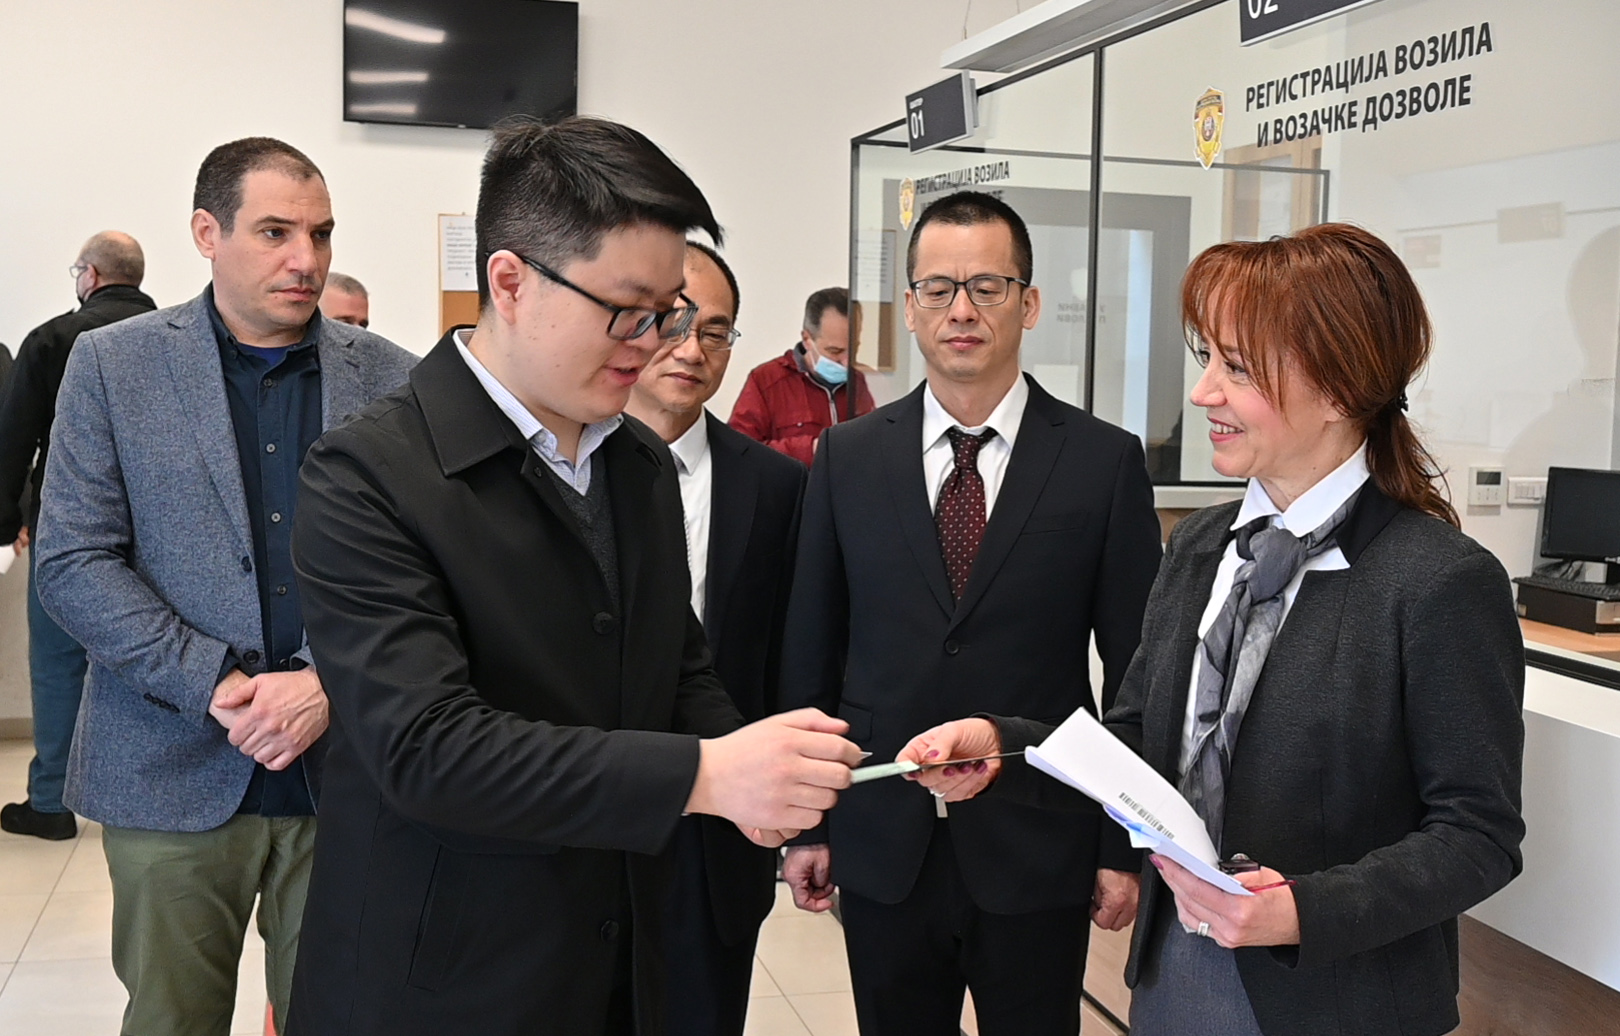 Прва замена кинеске возачке дозволе за српску, по основу Споразума о међусобном признању и замени возачких дозвола